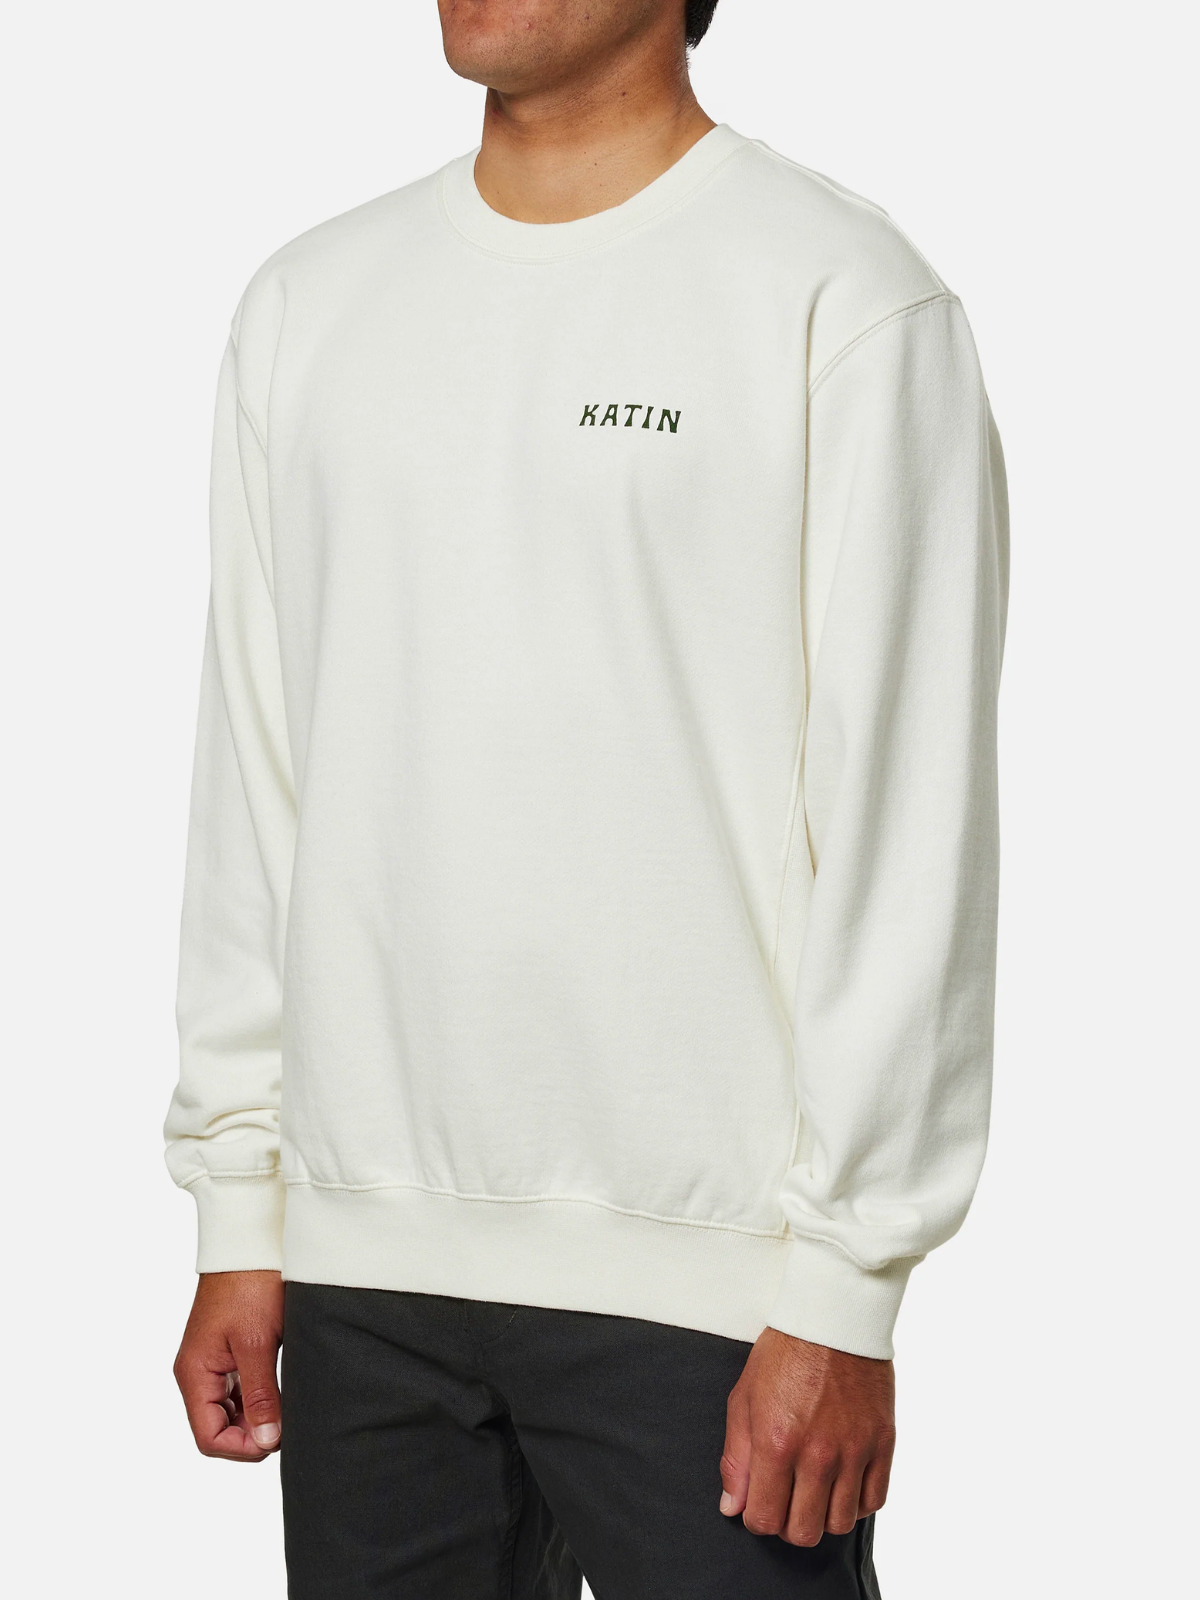 katin vista crewneck sweatshirt cotton polyester blend fleece white kempt athens ga georgia men's clothing store